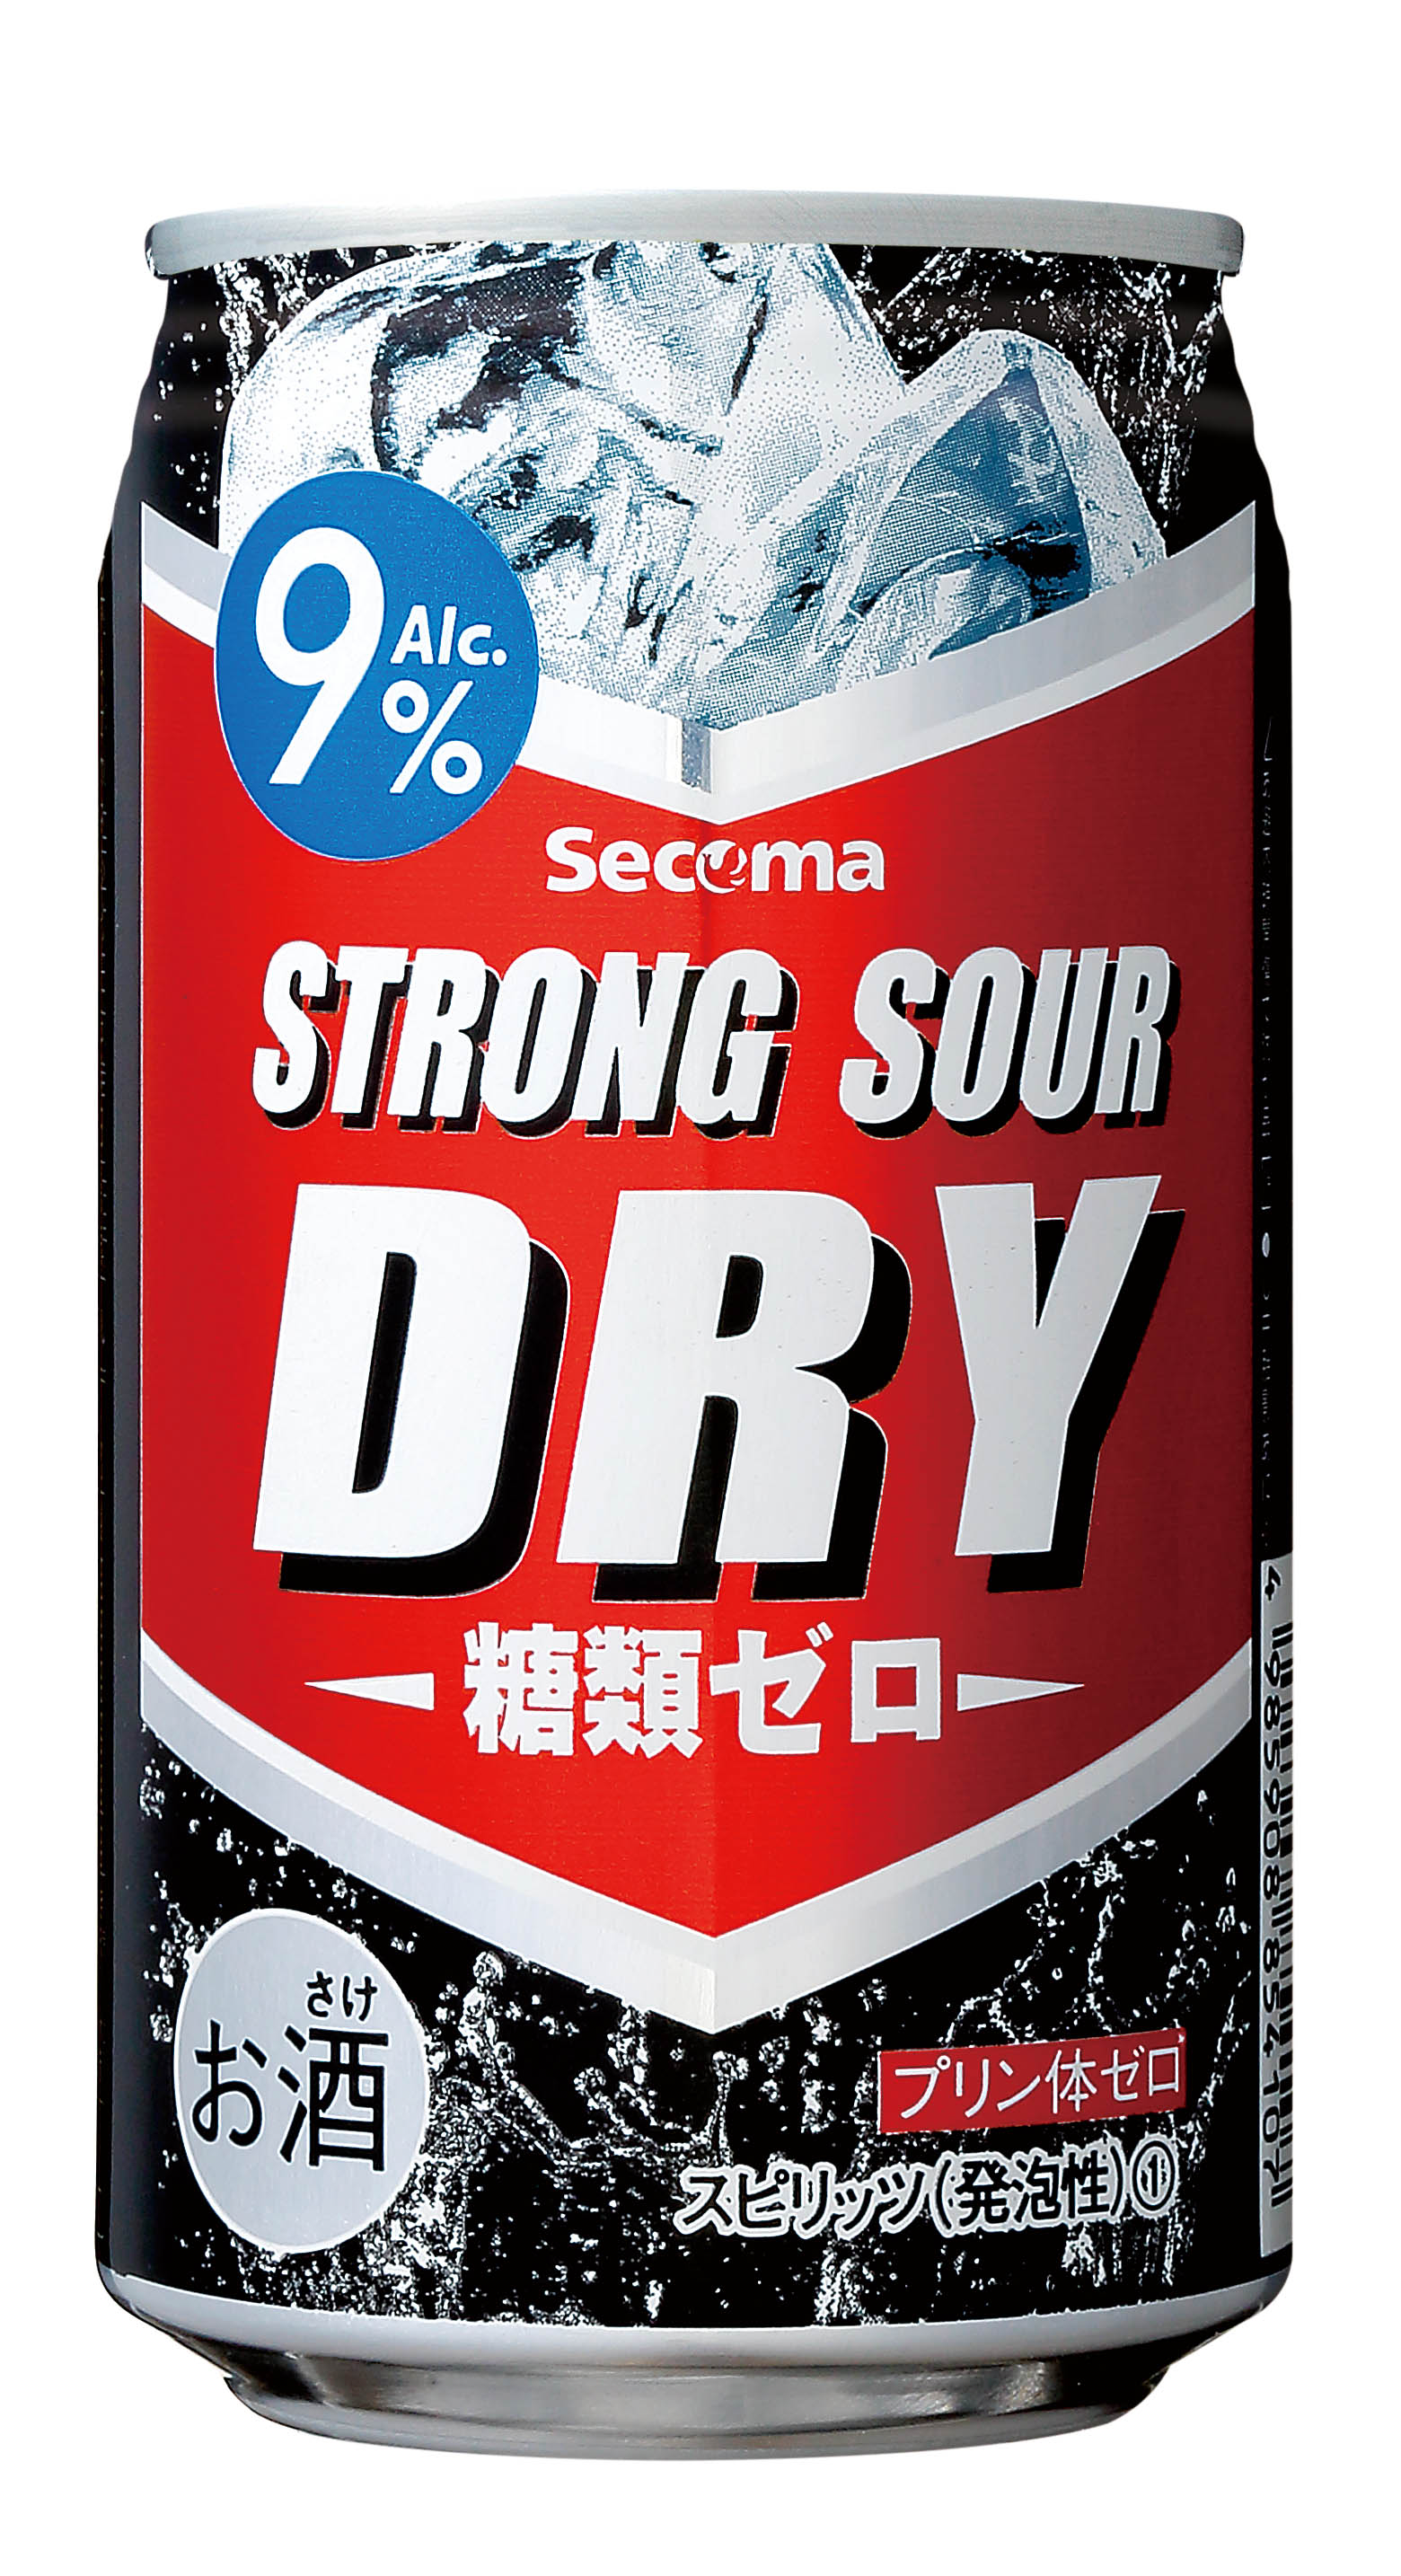 Secoma ストロングサワー ドライ 350ml 24本入 - セイコーマート公式通販